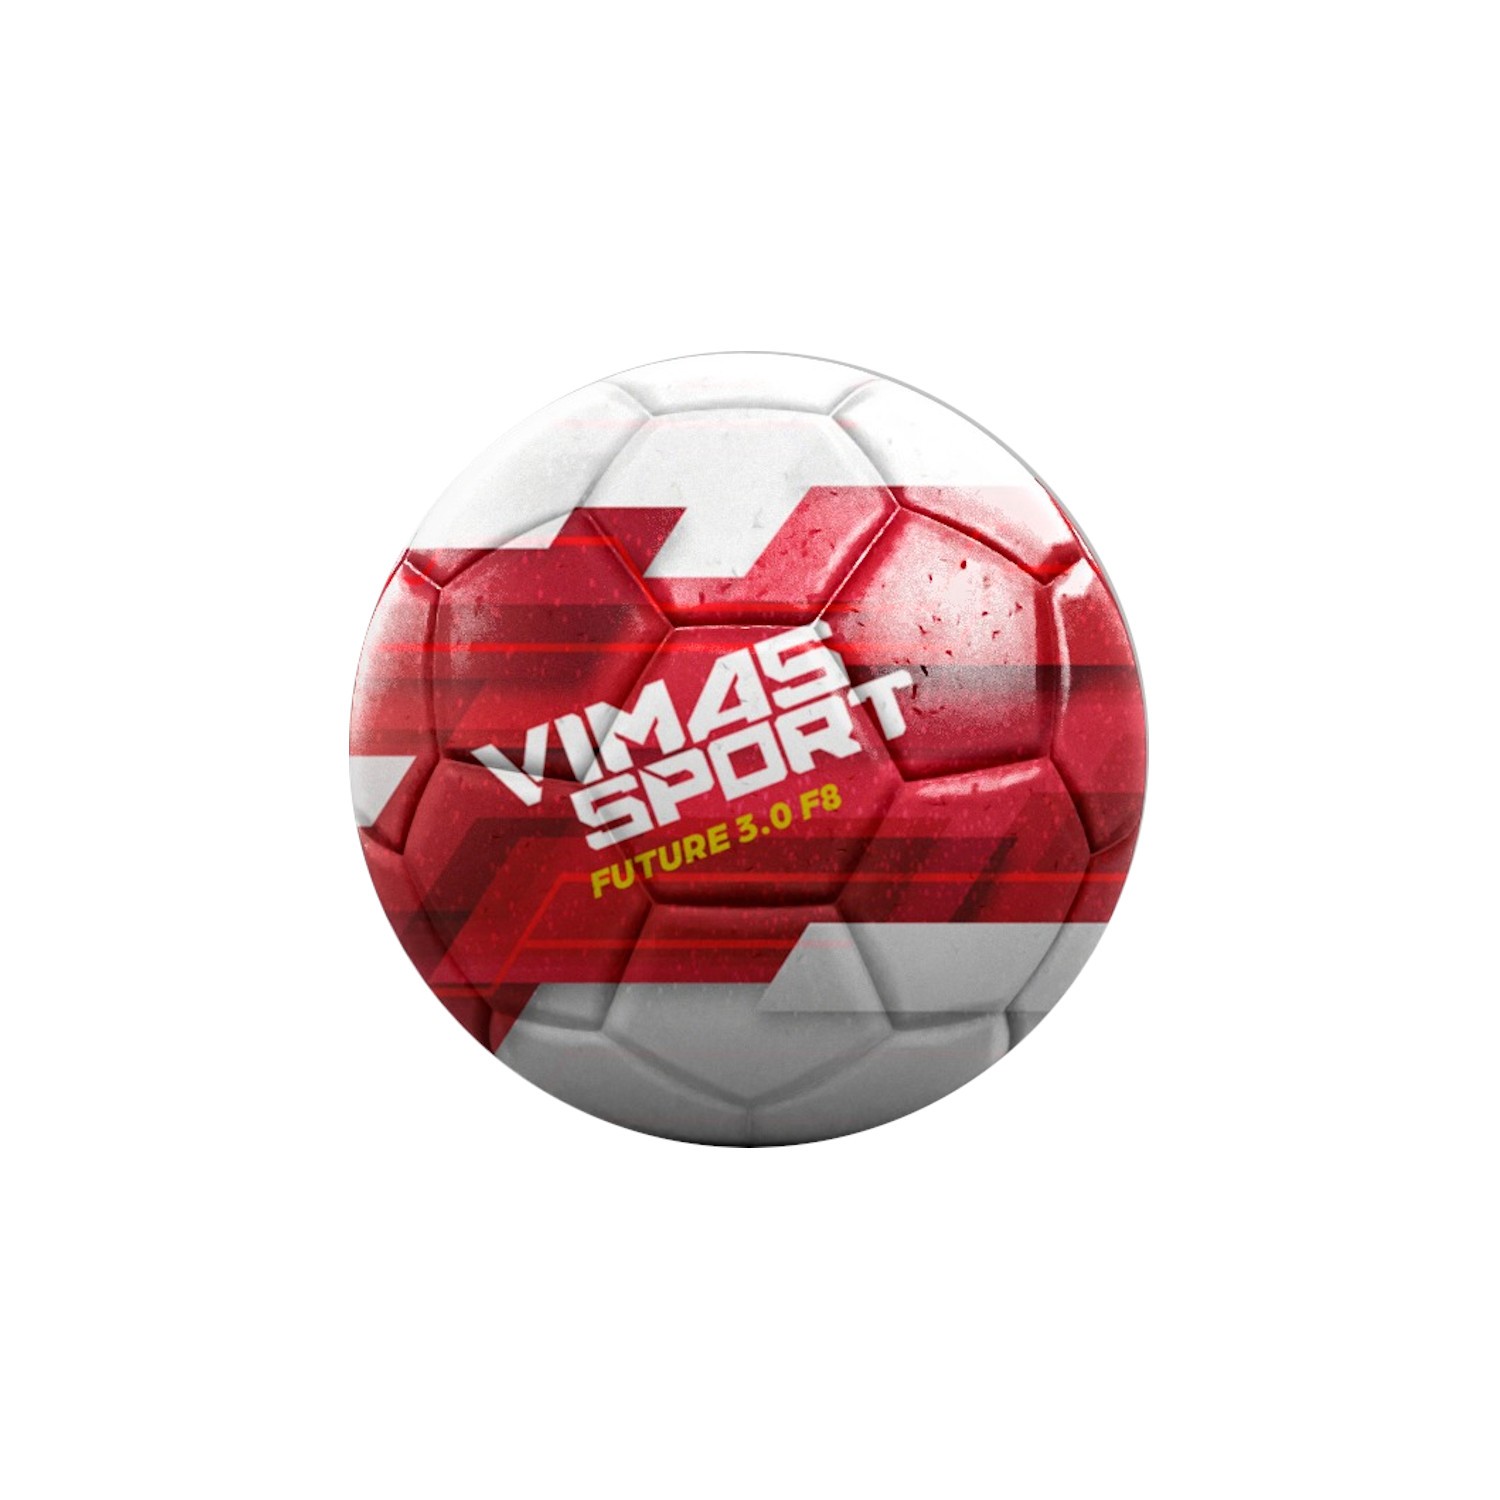 Balon Futbol Vimas Sport Future 3.0 - blanco - 